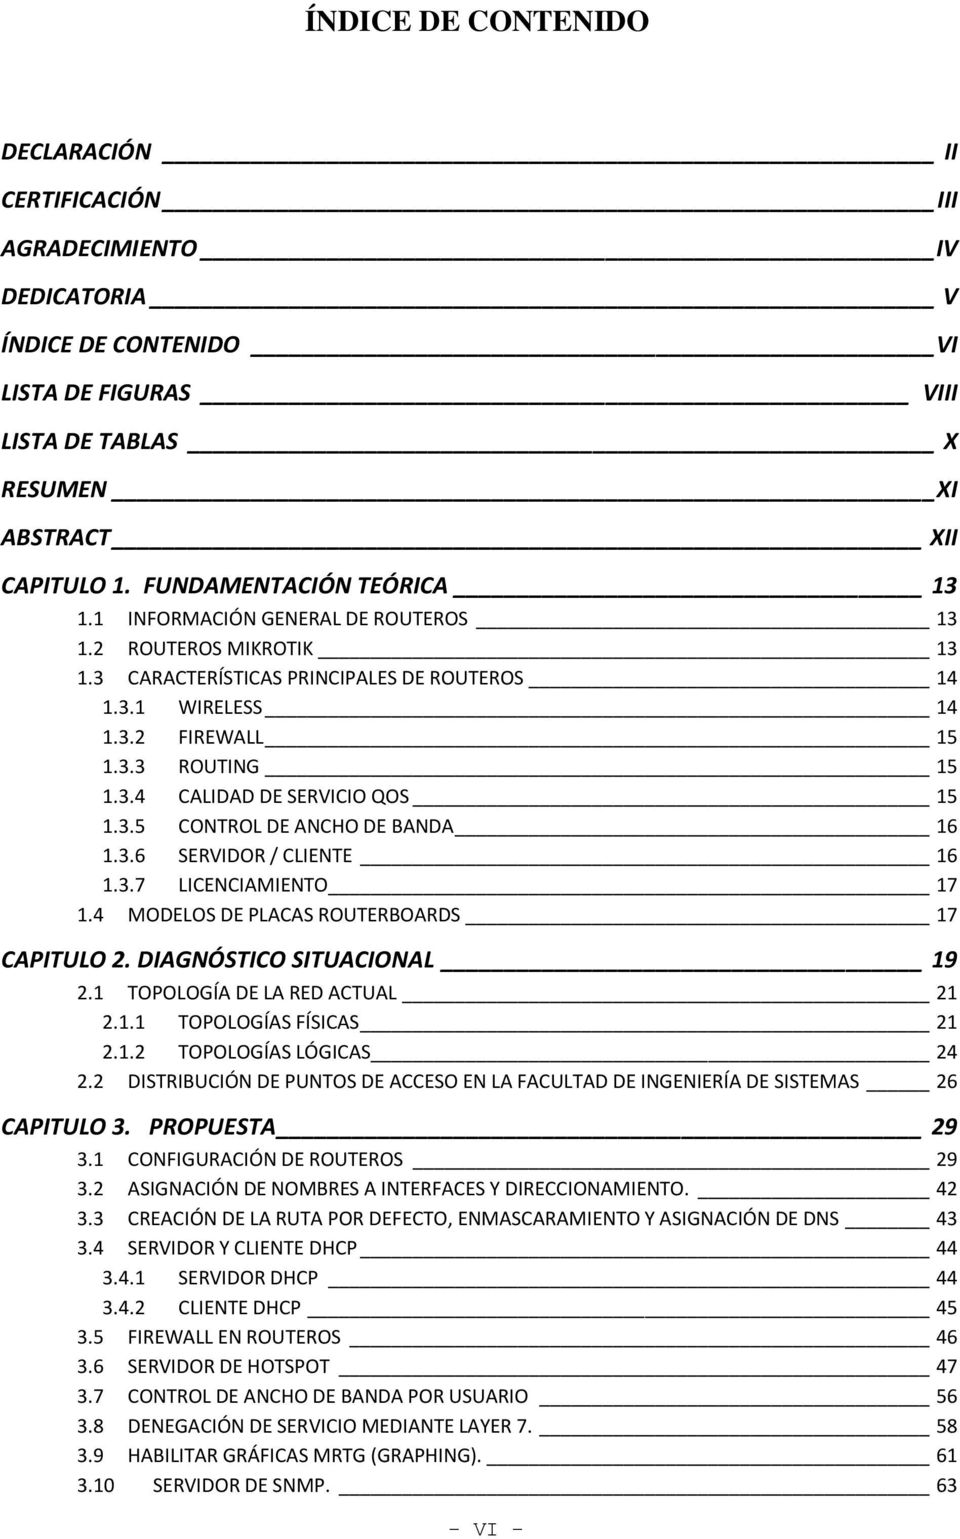 3.5 CONTROL DE ANCHO DE BANDA 16 1.3.6 SERVIDOR / CLIENTE 16 1.3.7 LICENCIAMIENTO 17 1.4 MODELOS DE PLACAS ROUTERBOARDS 17 CAPITULO 2. DIAGNÓSTICO SITUACIONAL 19 2.1 TOPOLOGÍA DE LA RED ACTUAL 21 2.1.1 TOPOLOGÍAS FÍSICAS 21 2.